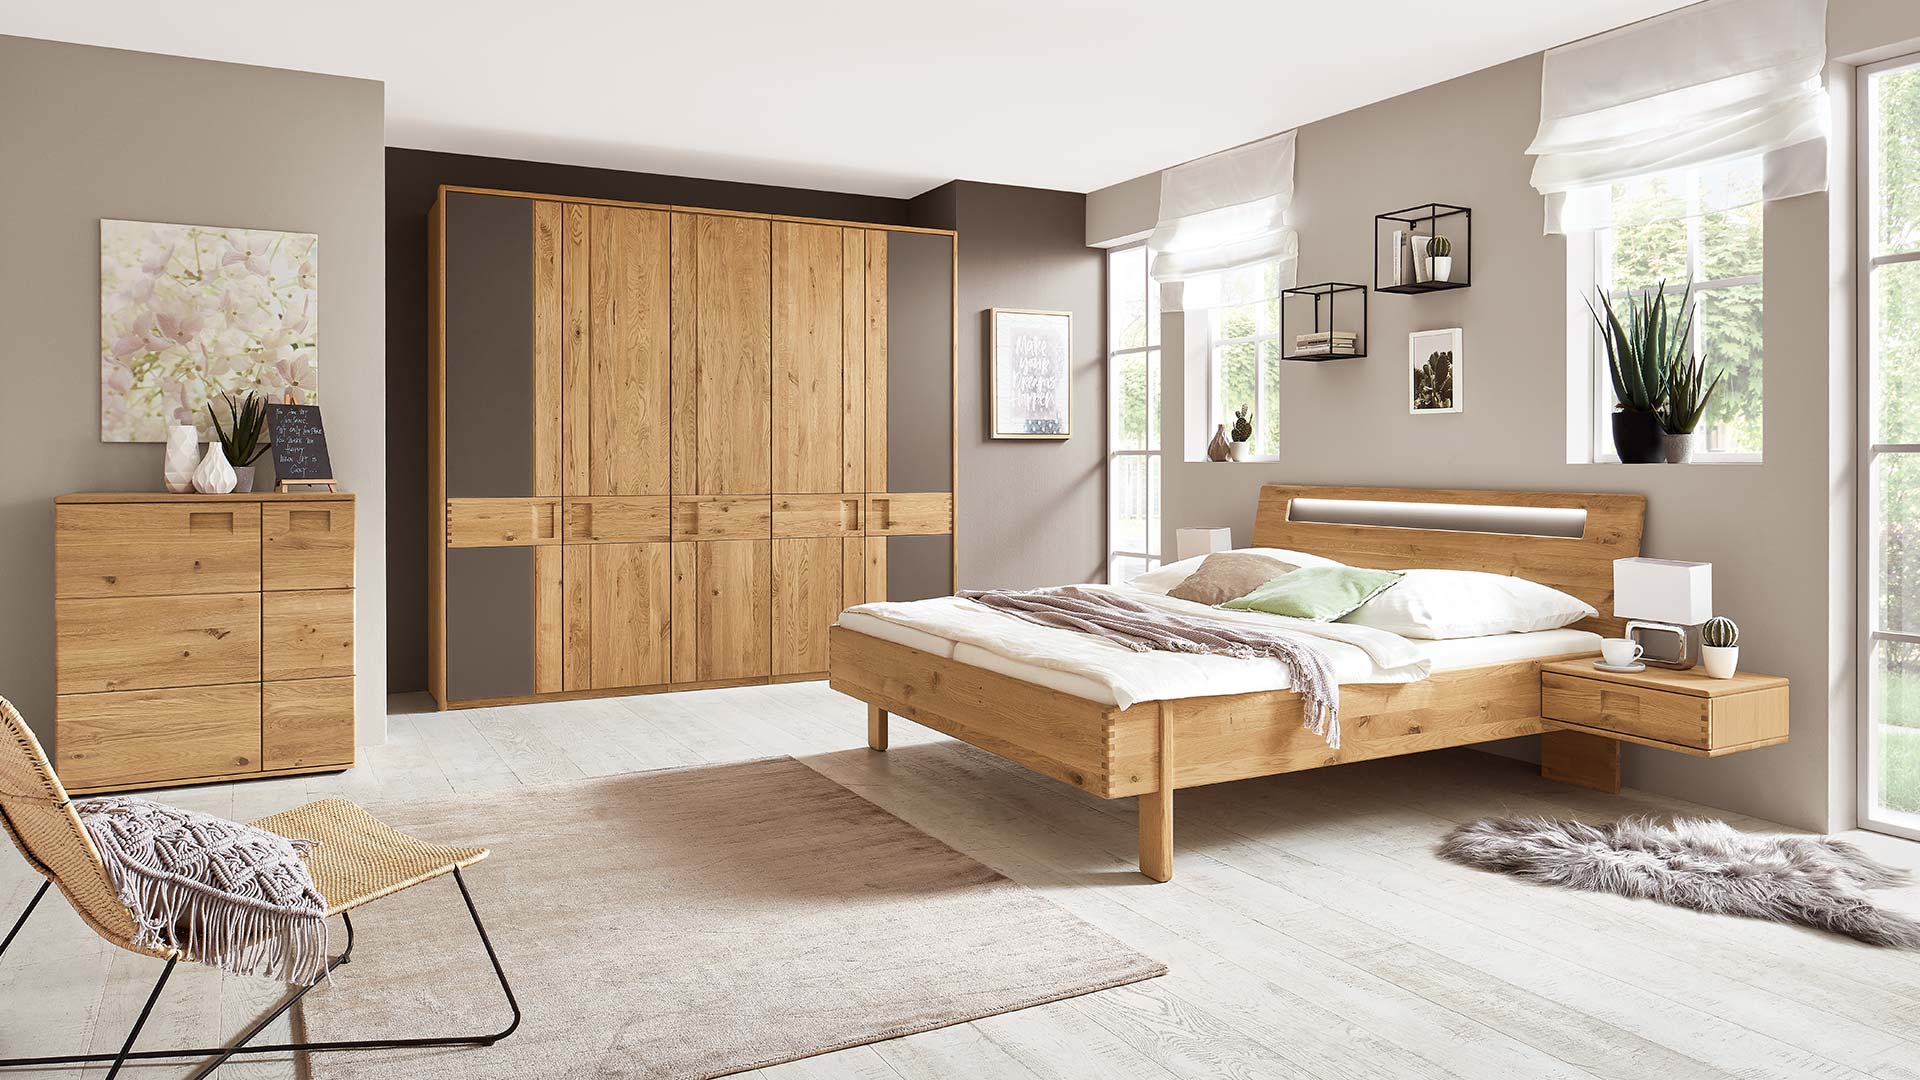 Schlafzimmersystem in einem beigen Schlafzimmer mit Massivholzbett in Eiche oder Buche mit Nachtkonsole, Kleiderschrank und Kommode.